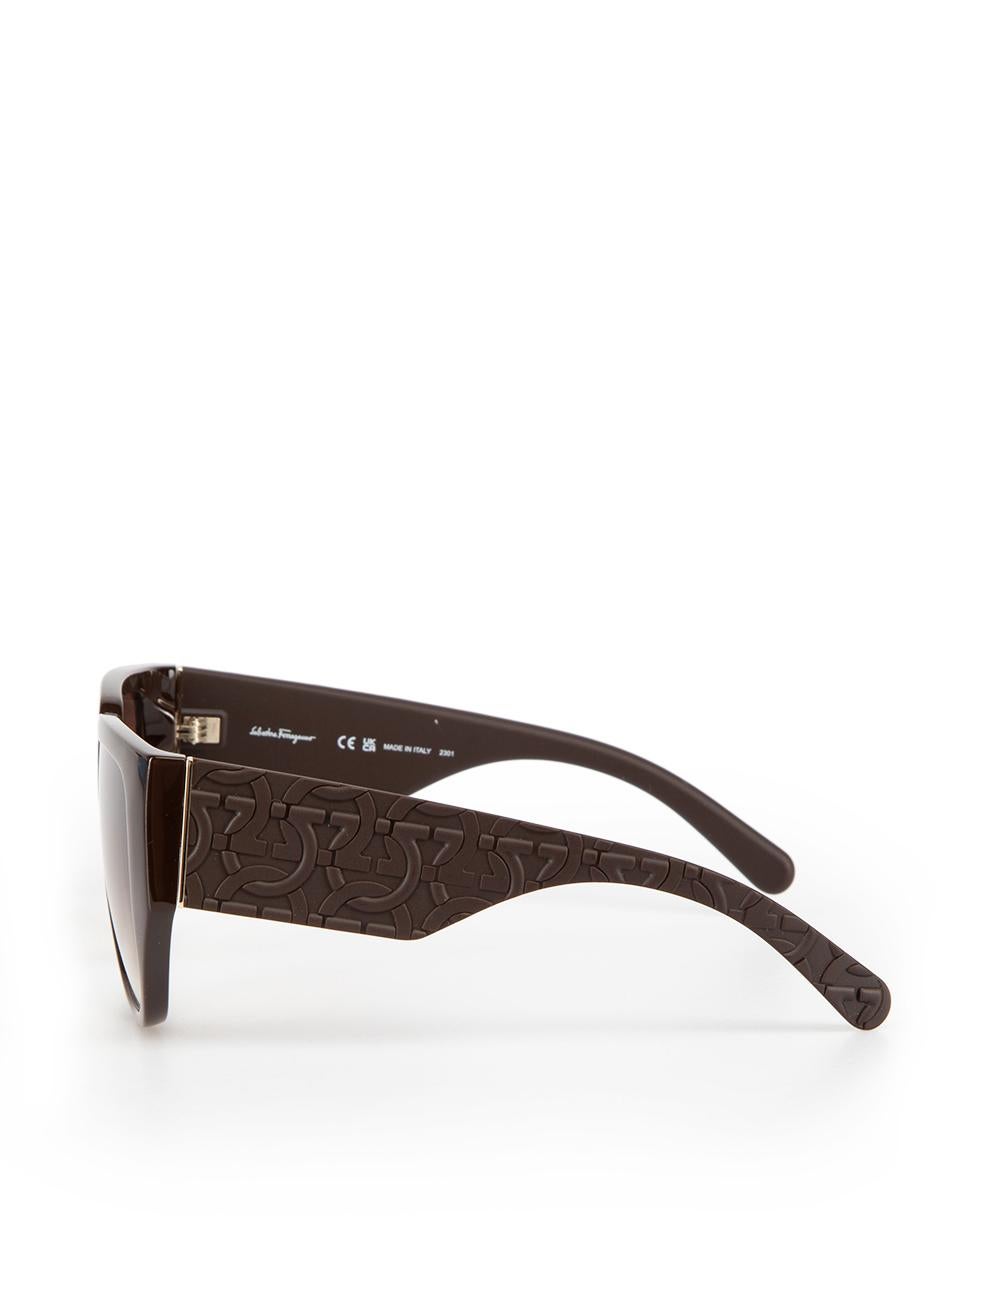 Salvatore Ferragamo Dark Brown Browline Gradient Sunglasses For Sale 1